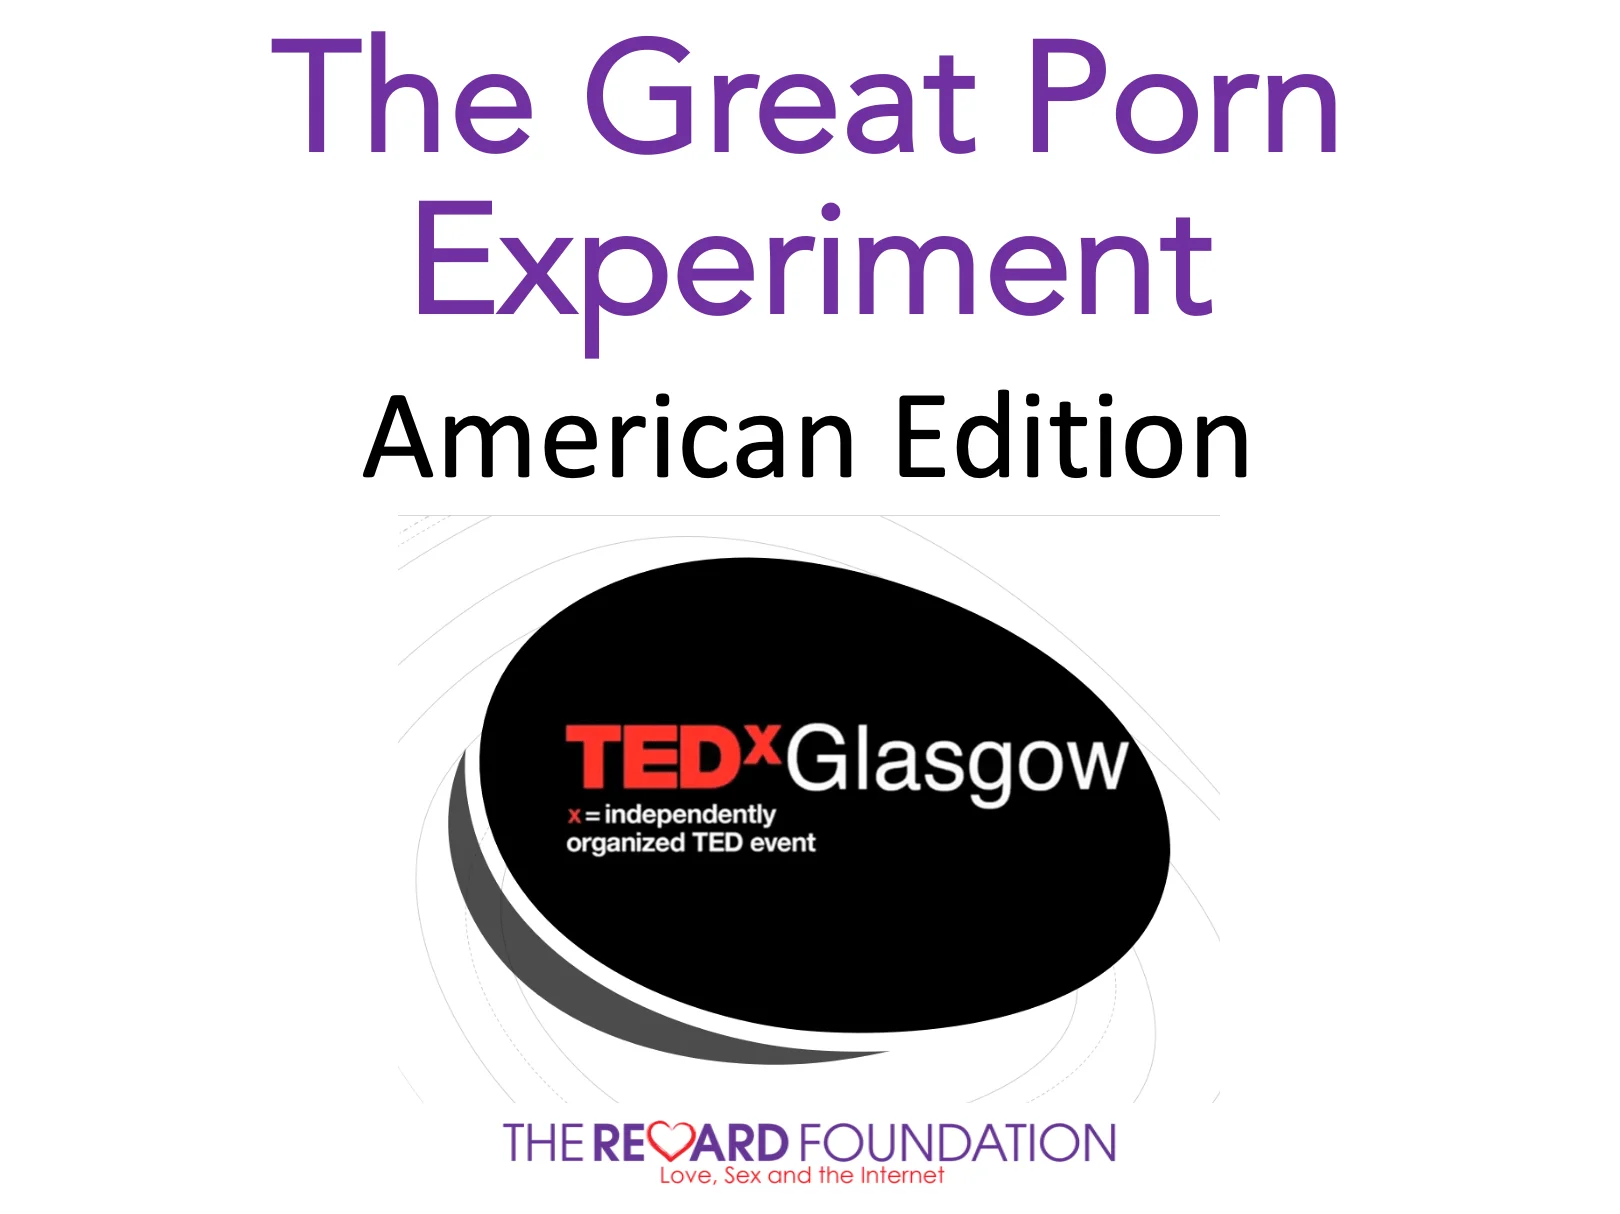 Skvělý porno experiment Američan